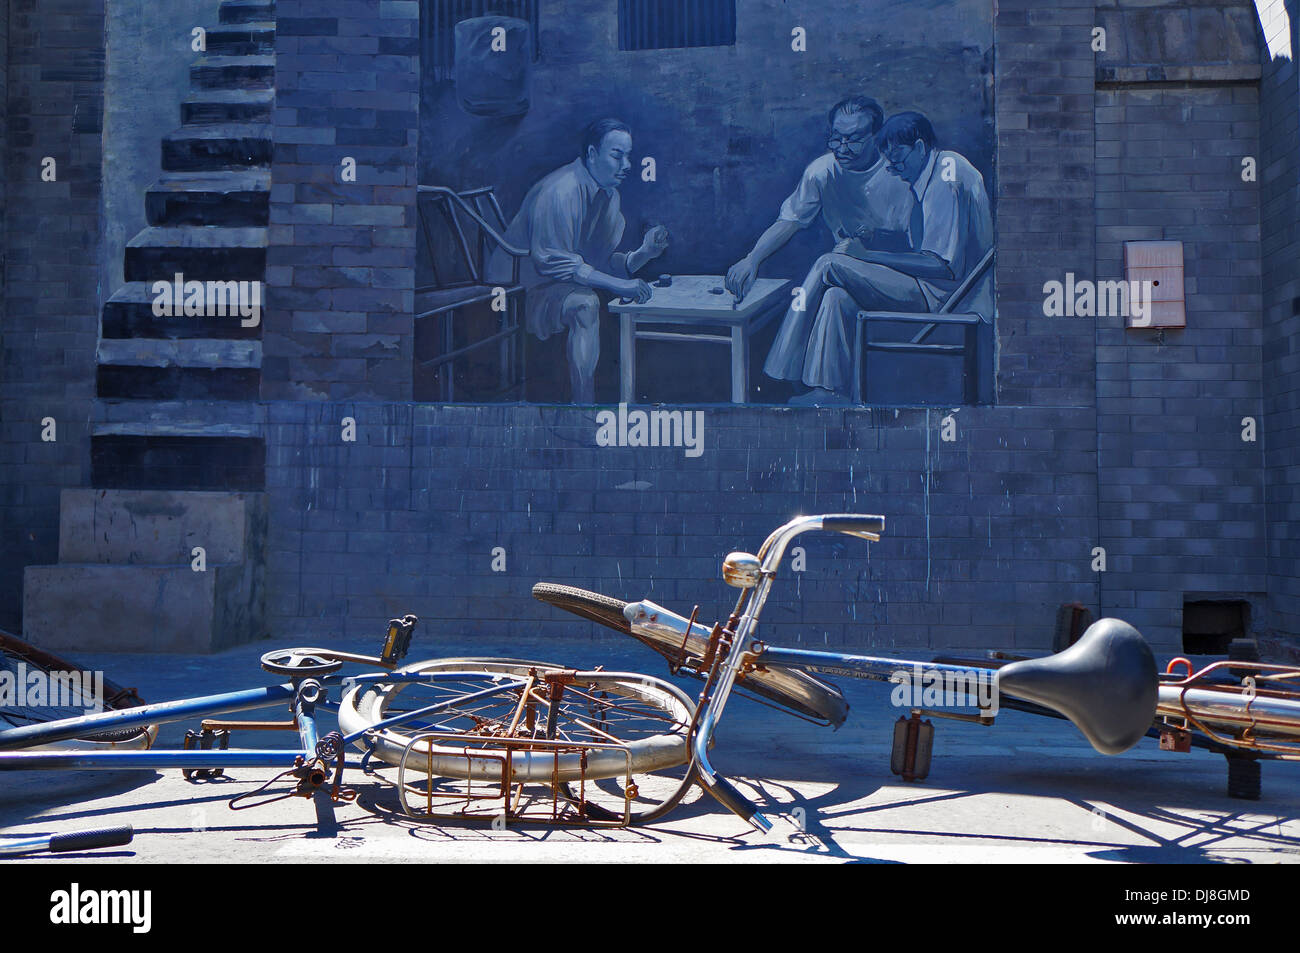 En face de certaines bicyclettes street art dans un hutong de Beijing, Chine Banque D'Images